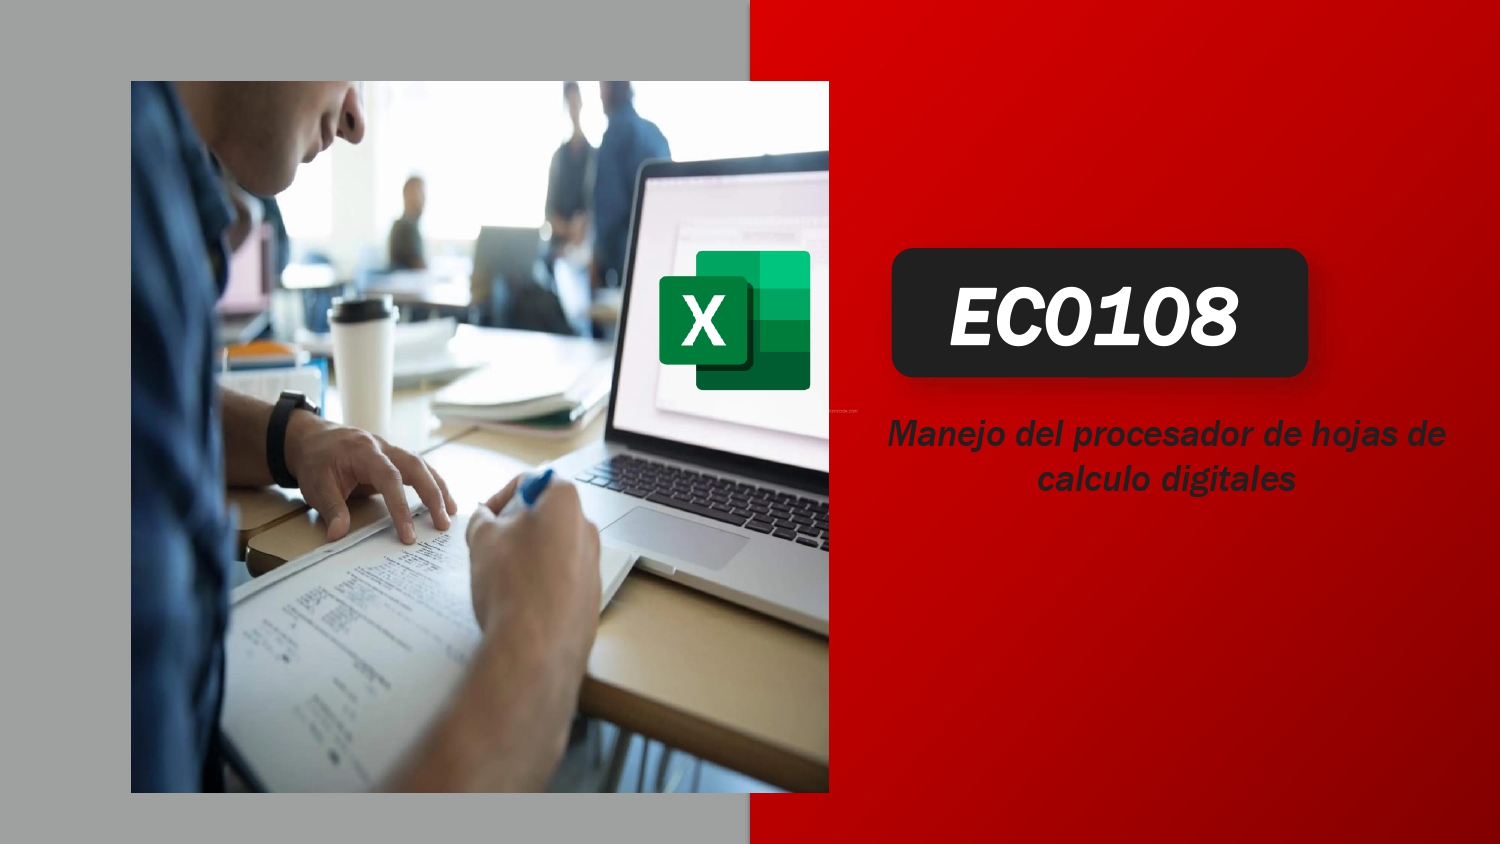 EC0108 Manejo del procesador de hojas de cálculo digitales.